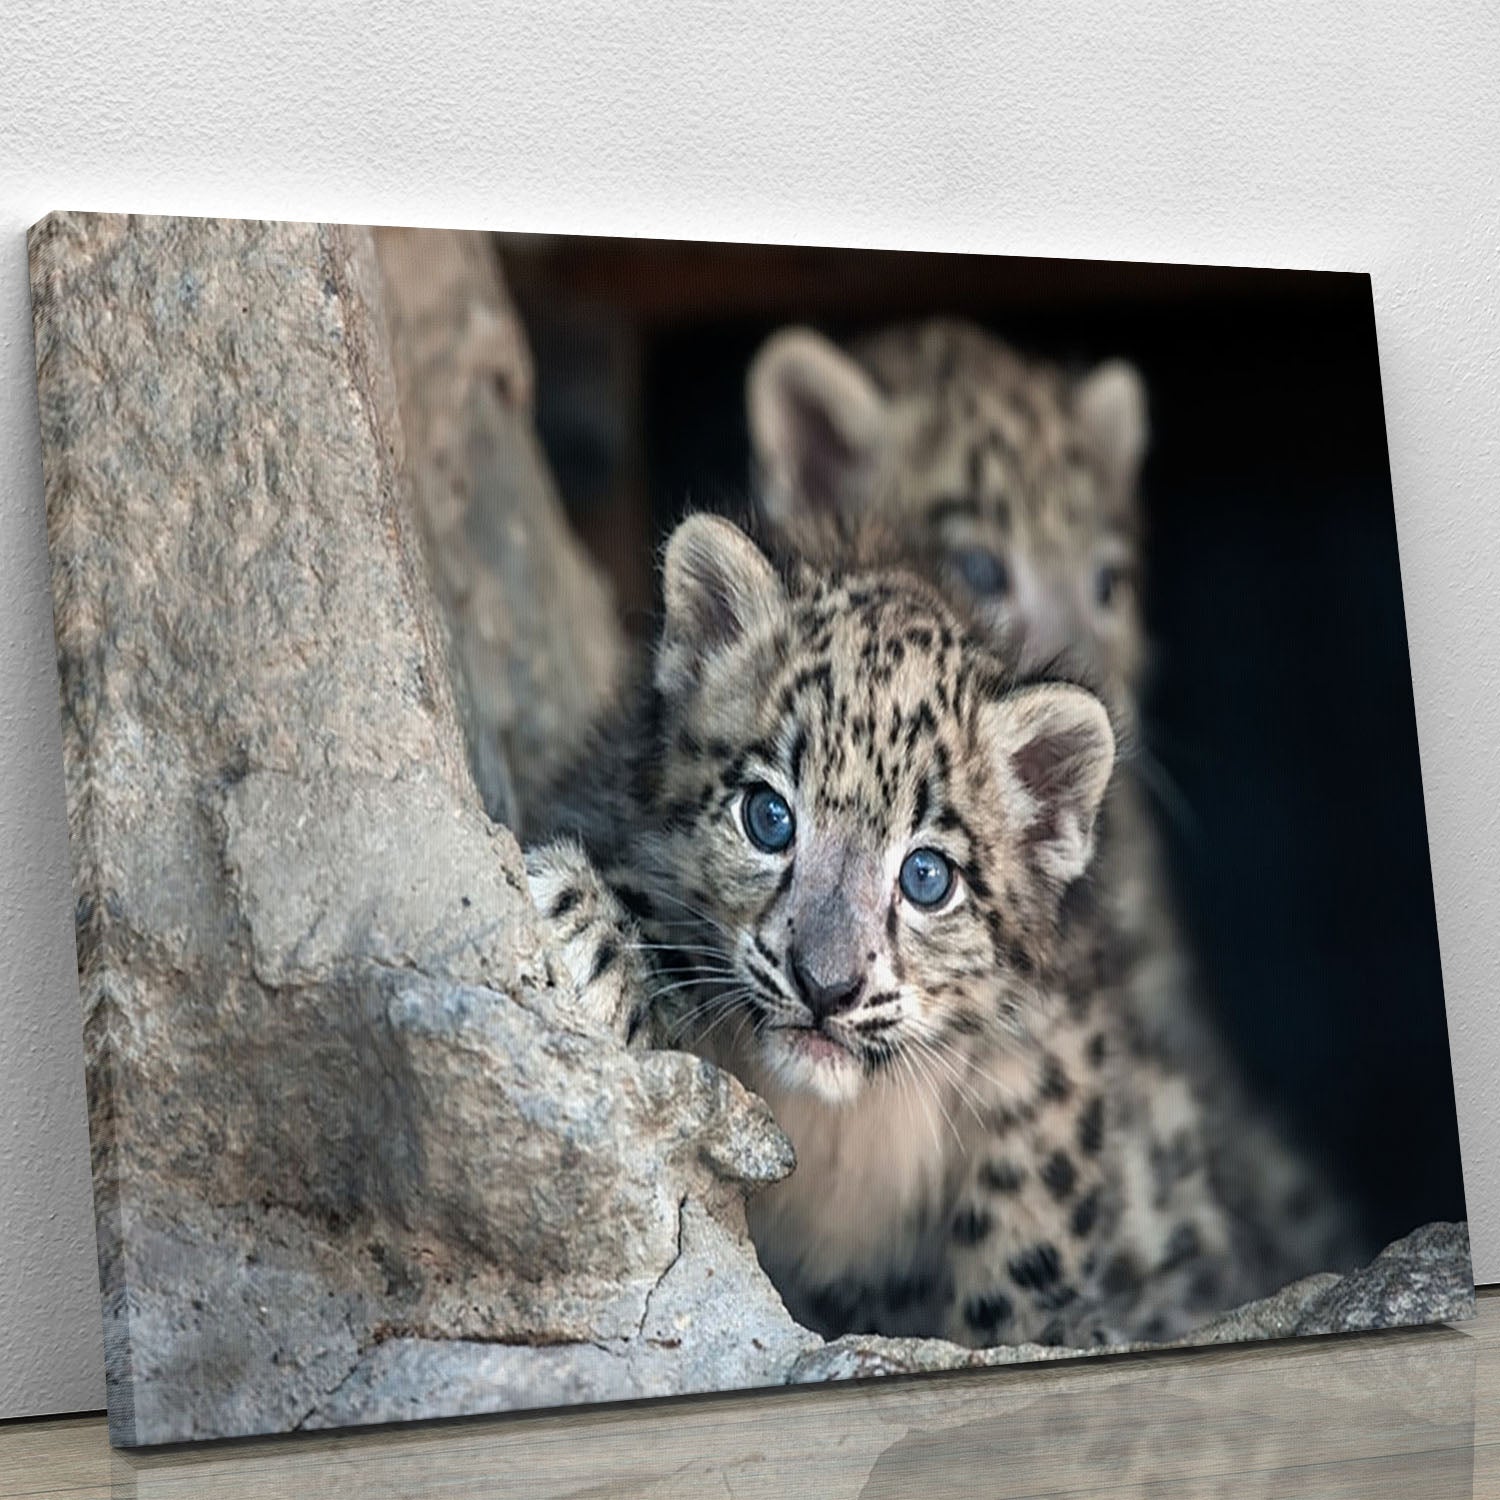 Snow leopard baby portrait Canvas Print or Poster - Canvas Art Rocks - 1